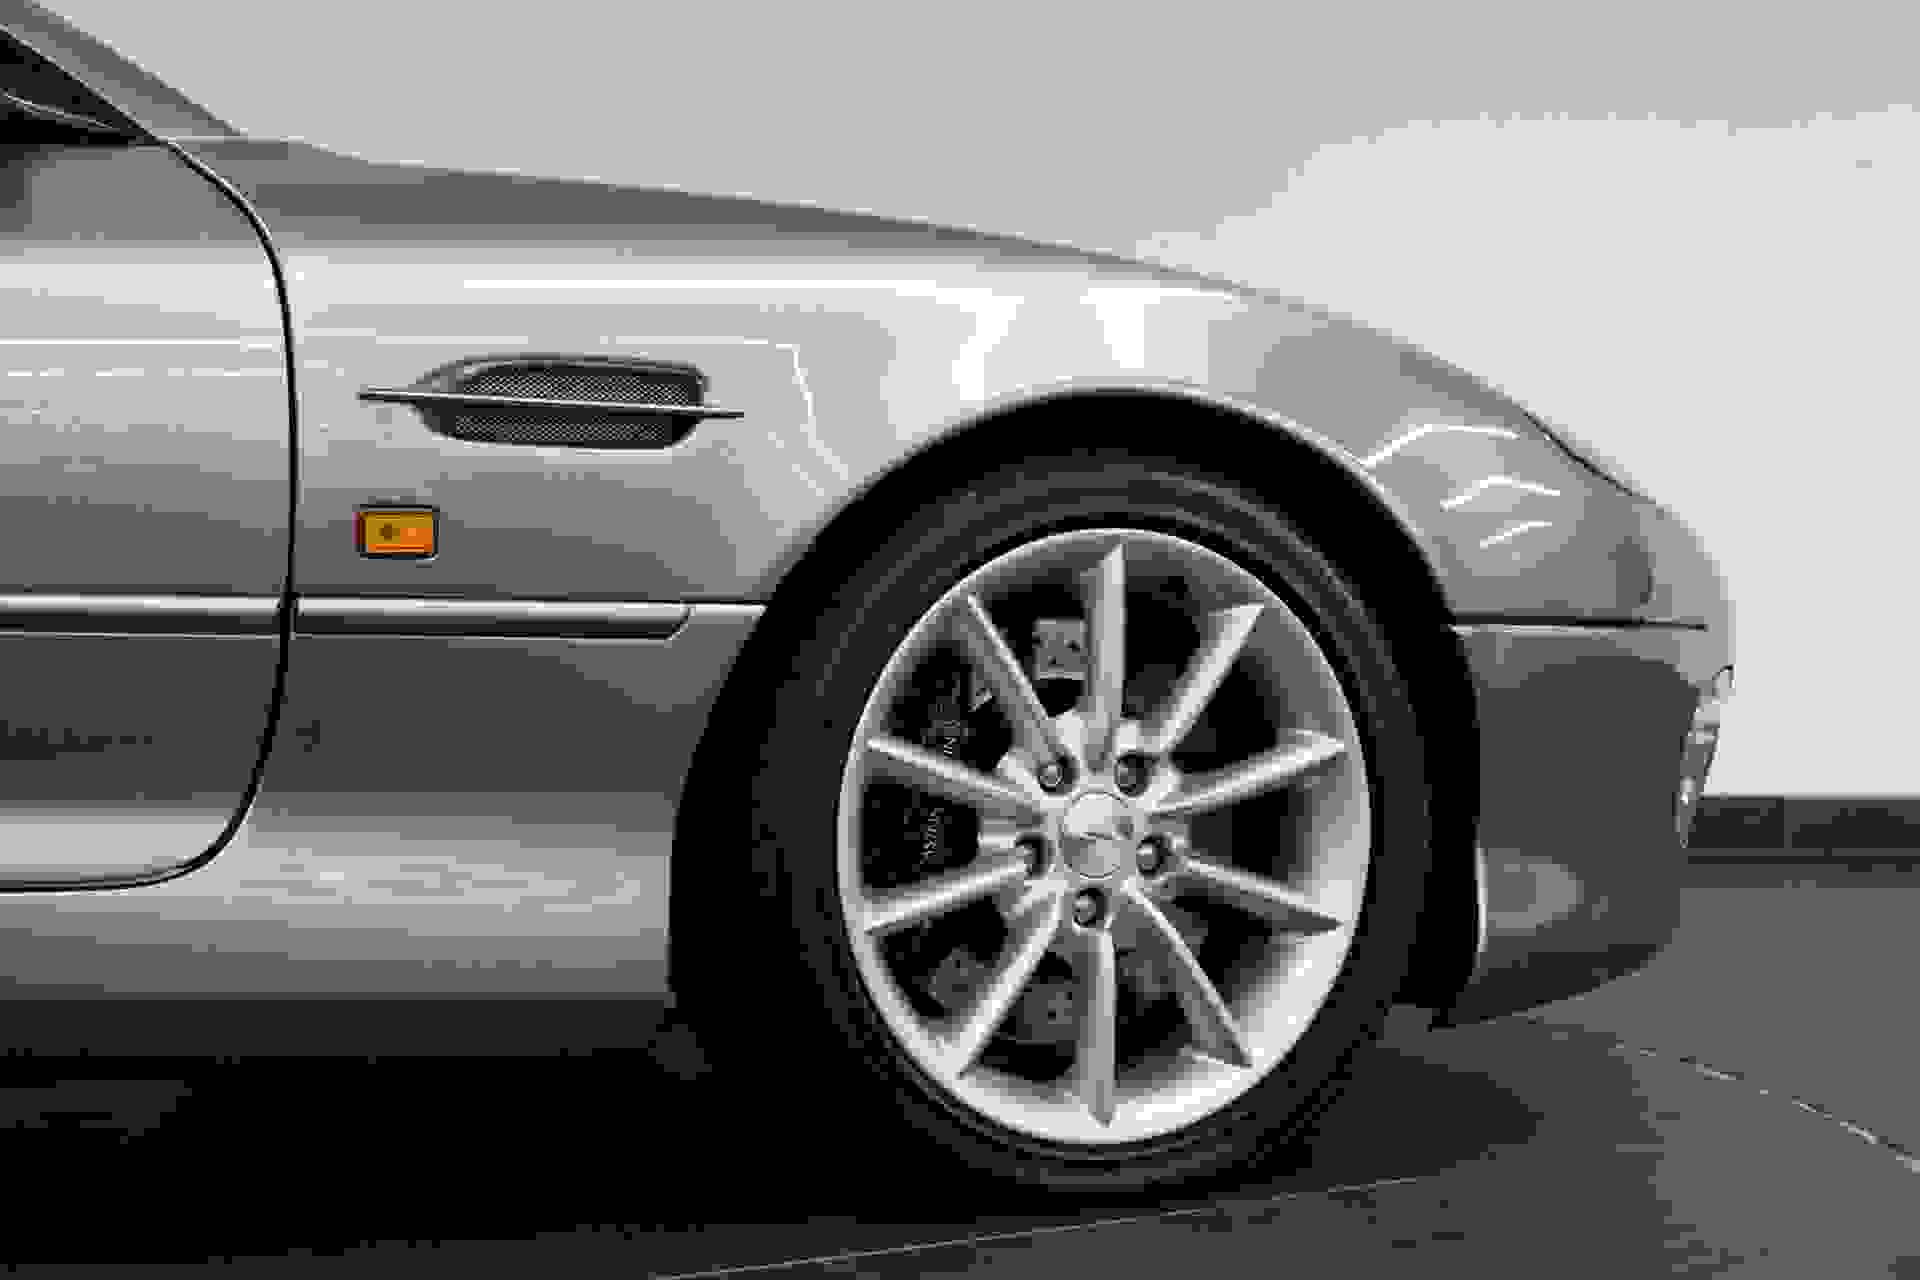 Aston Martin DB7 Photo eb852fd1-ac6a-443d-a9cf-1642c7ecd849.jpg